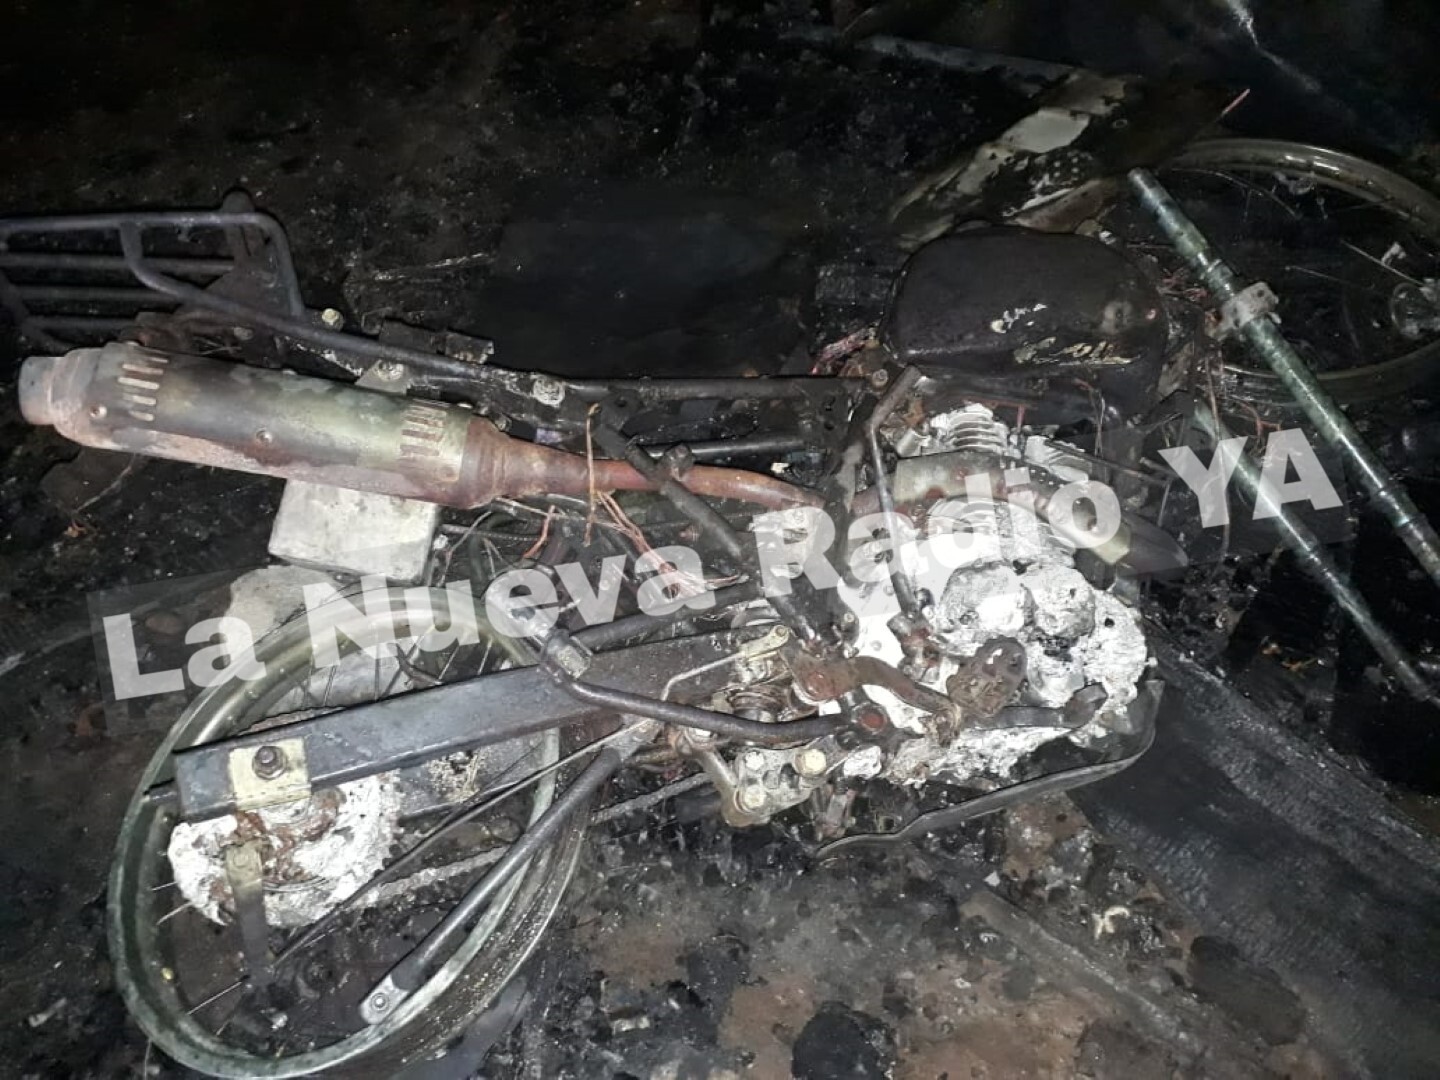 Incendio devora taller de motos en granada 2